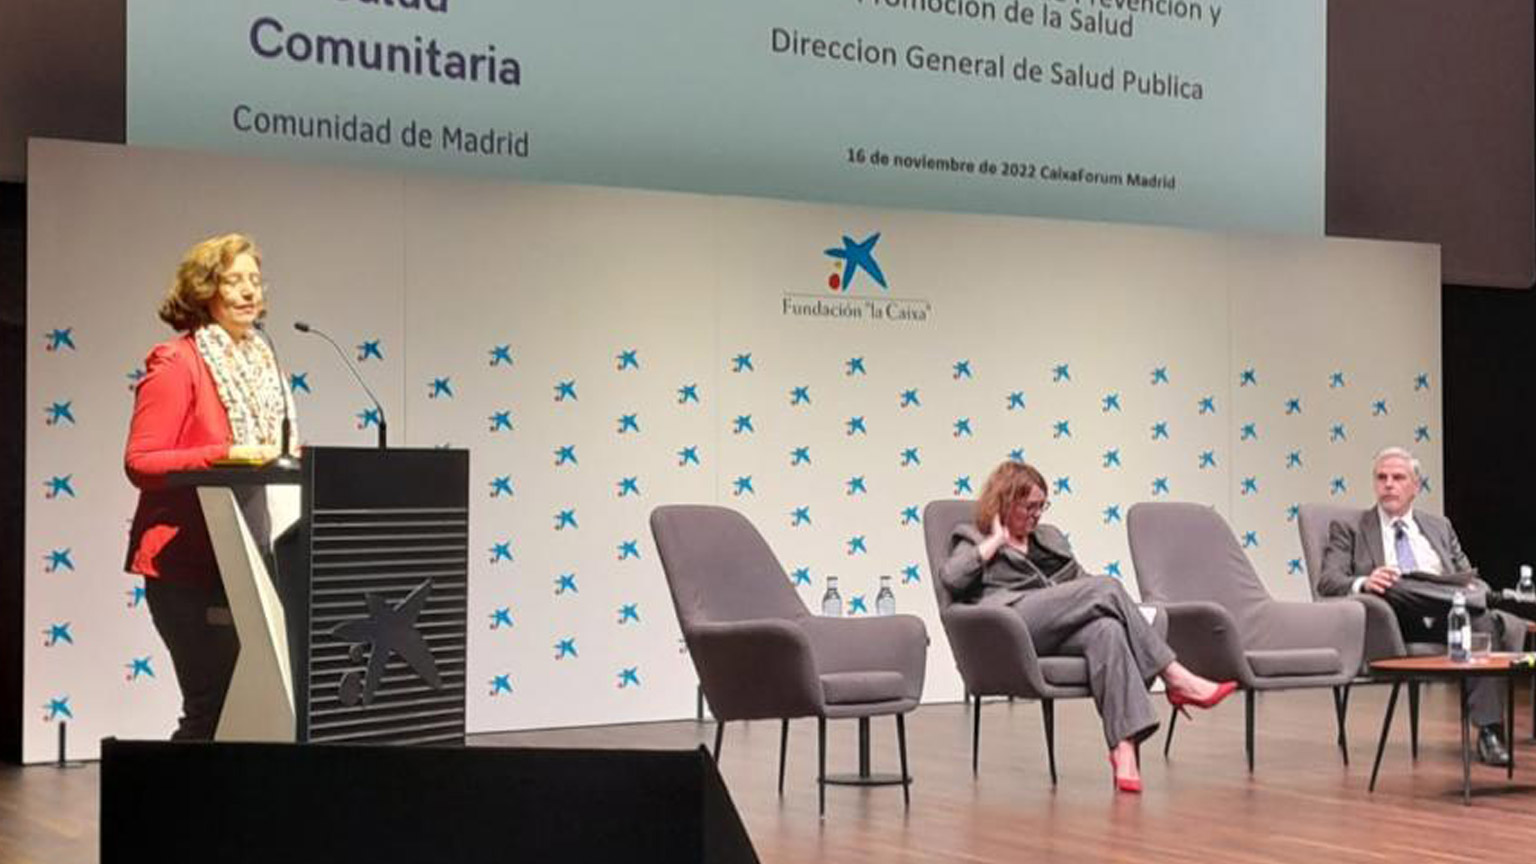 El pasado mes de noviembre de 2022 se celebró en el Caixa Forum la primera Jornada de Salud Comunitaria del Comunidad de Madrid.